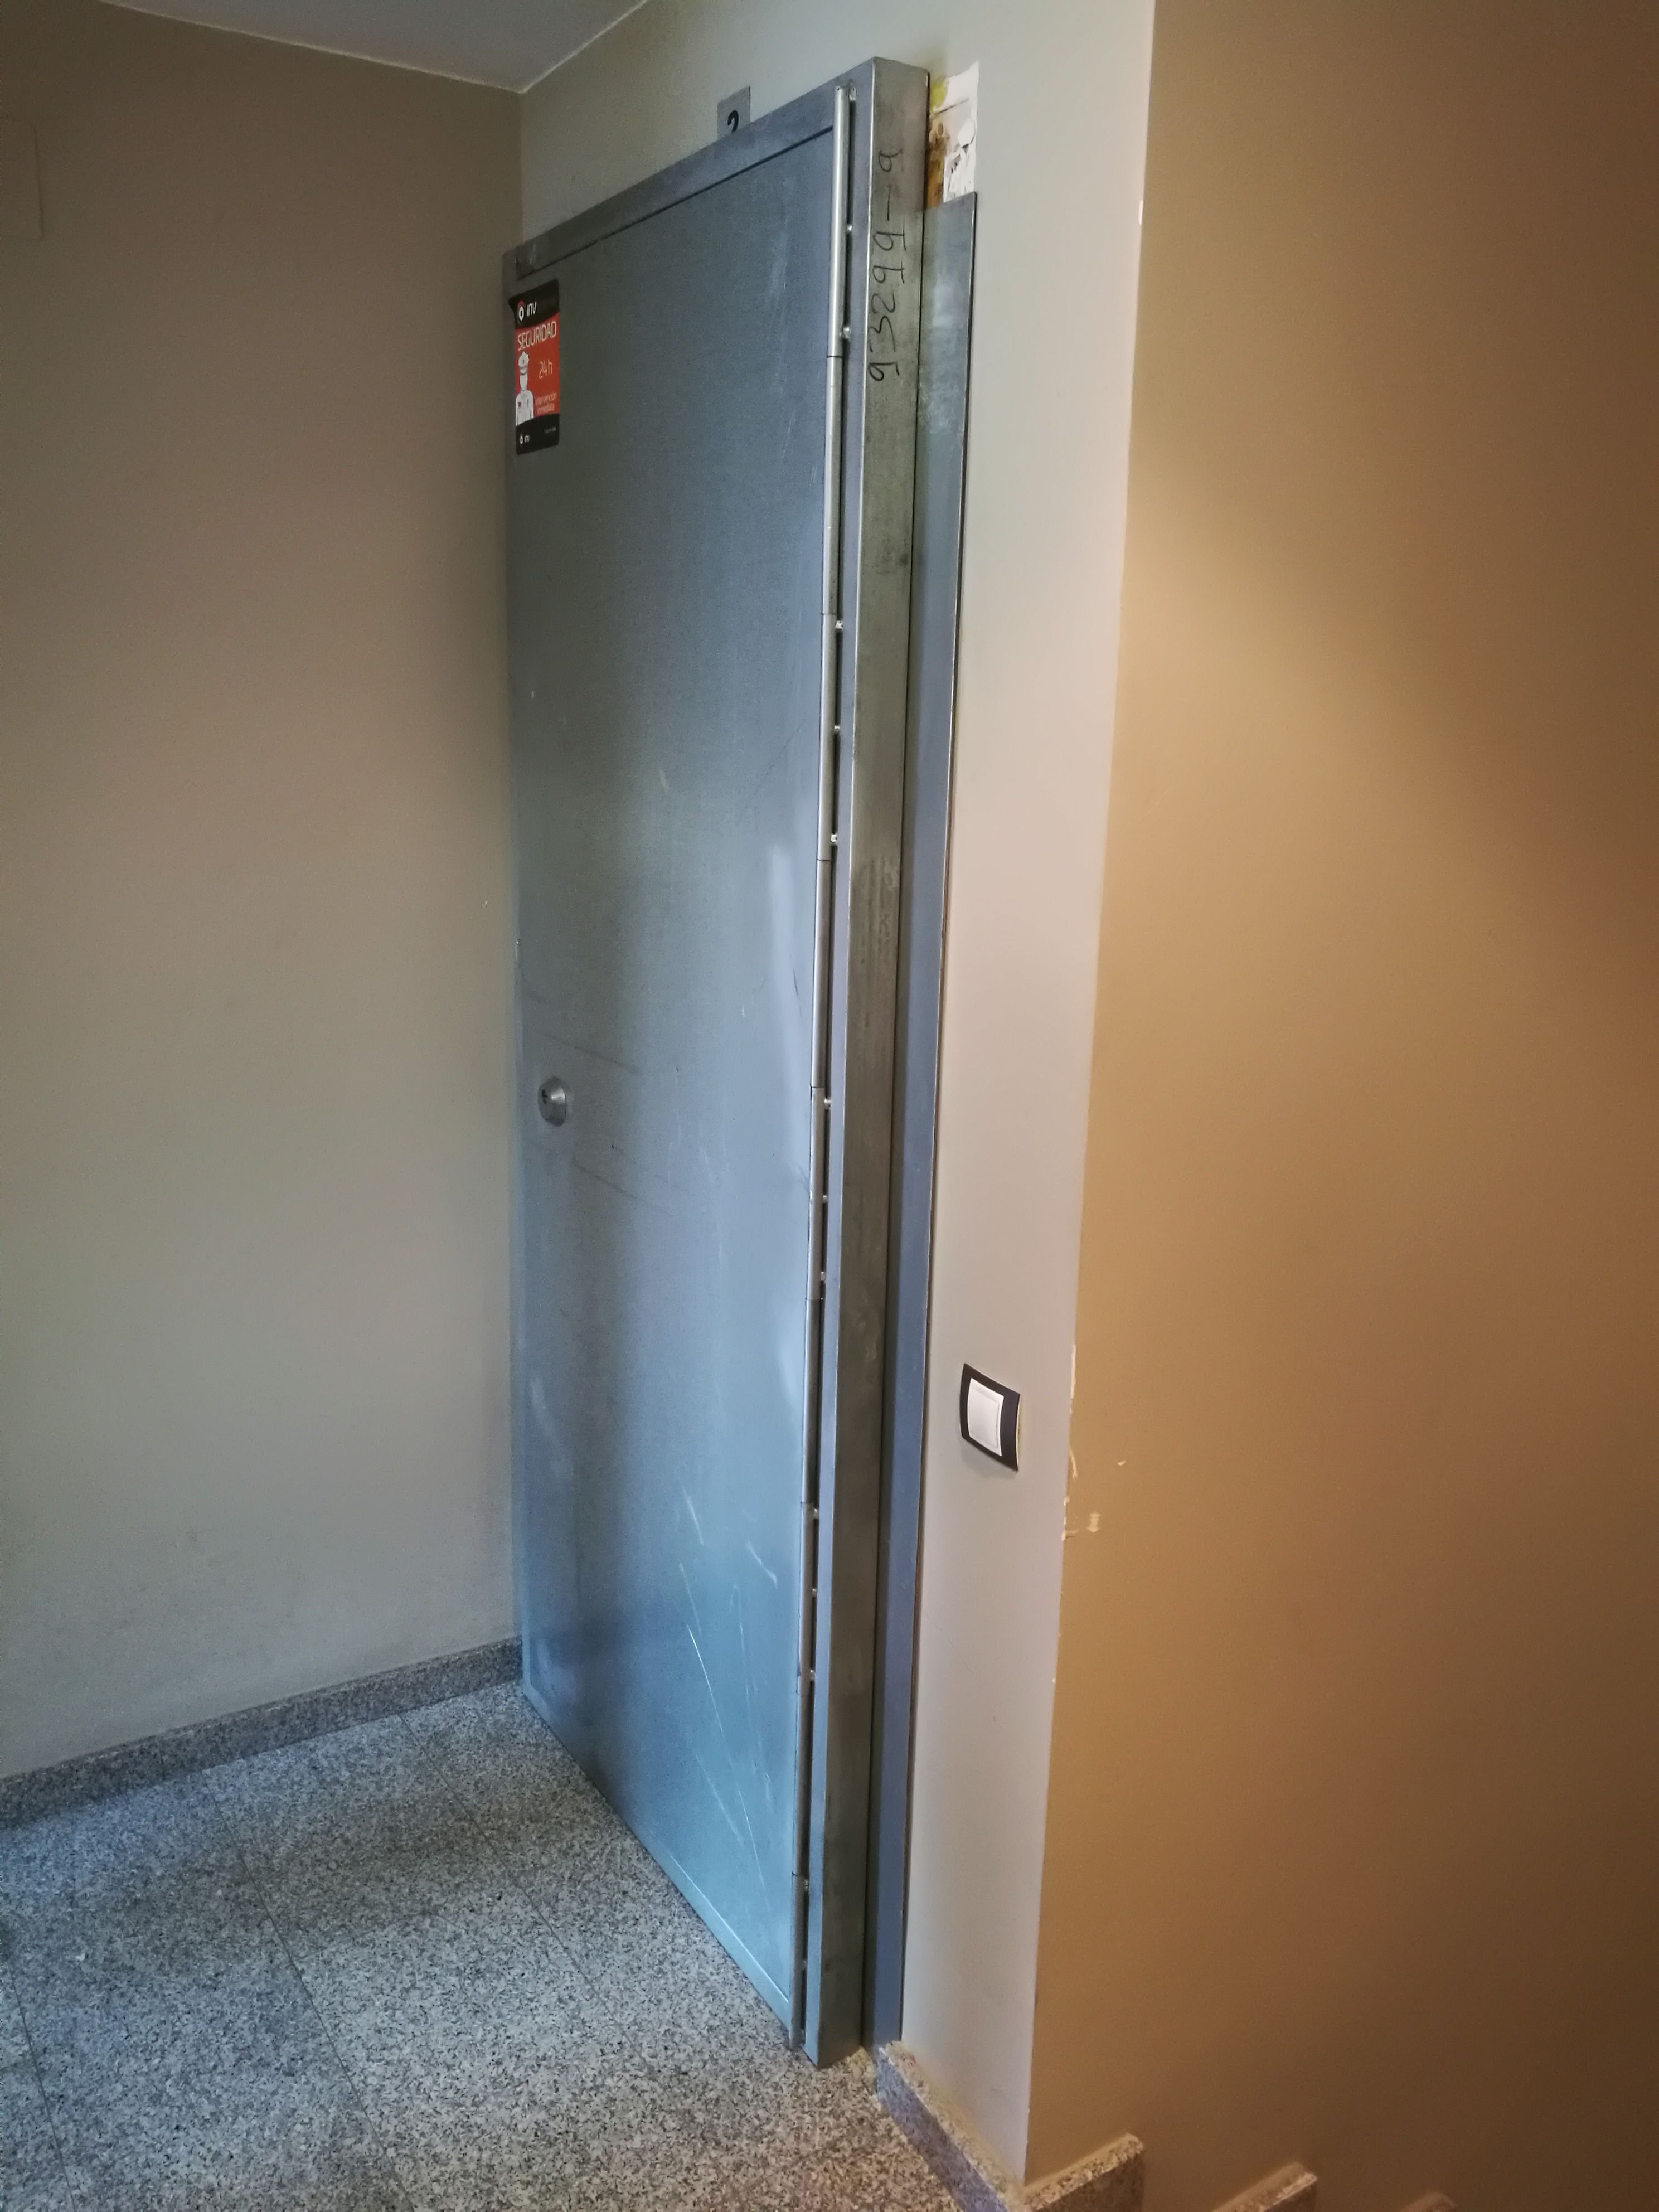 A l'edifici hi ha tres portes blindades com aquesta. FOTO: Redacció